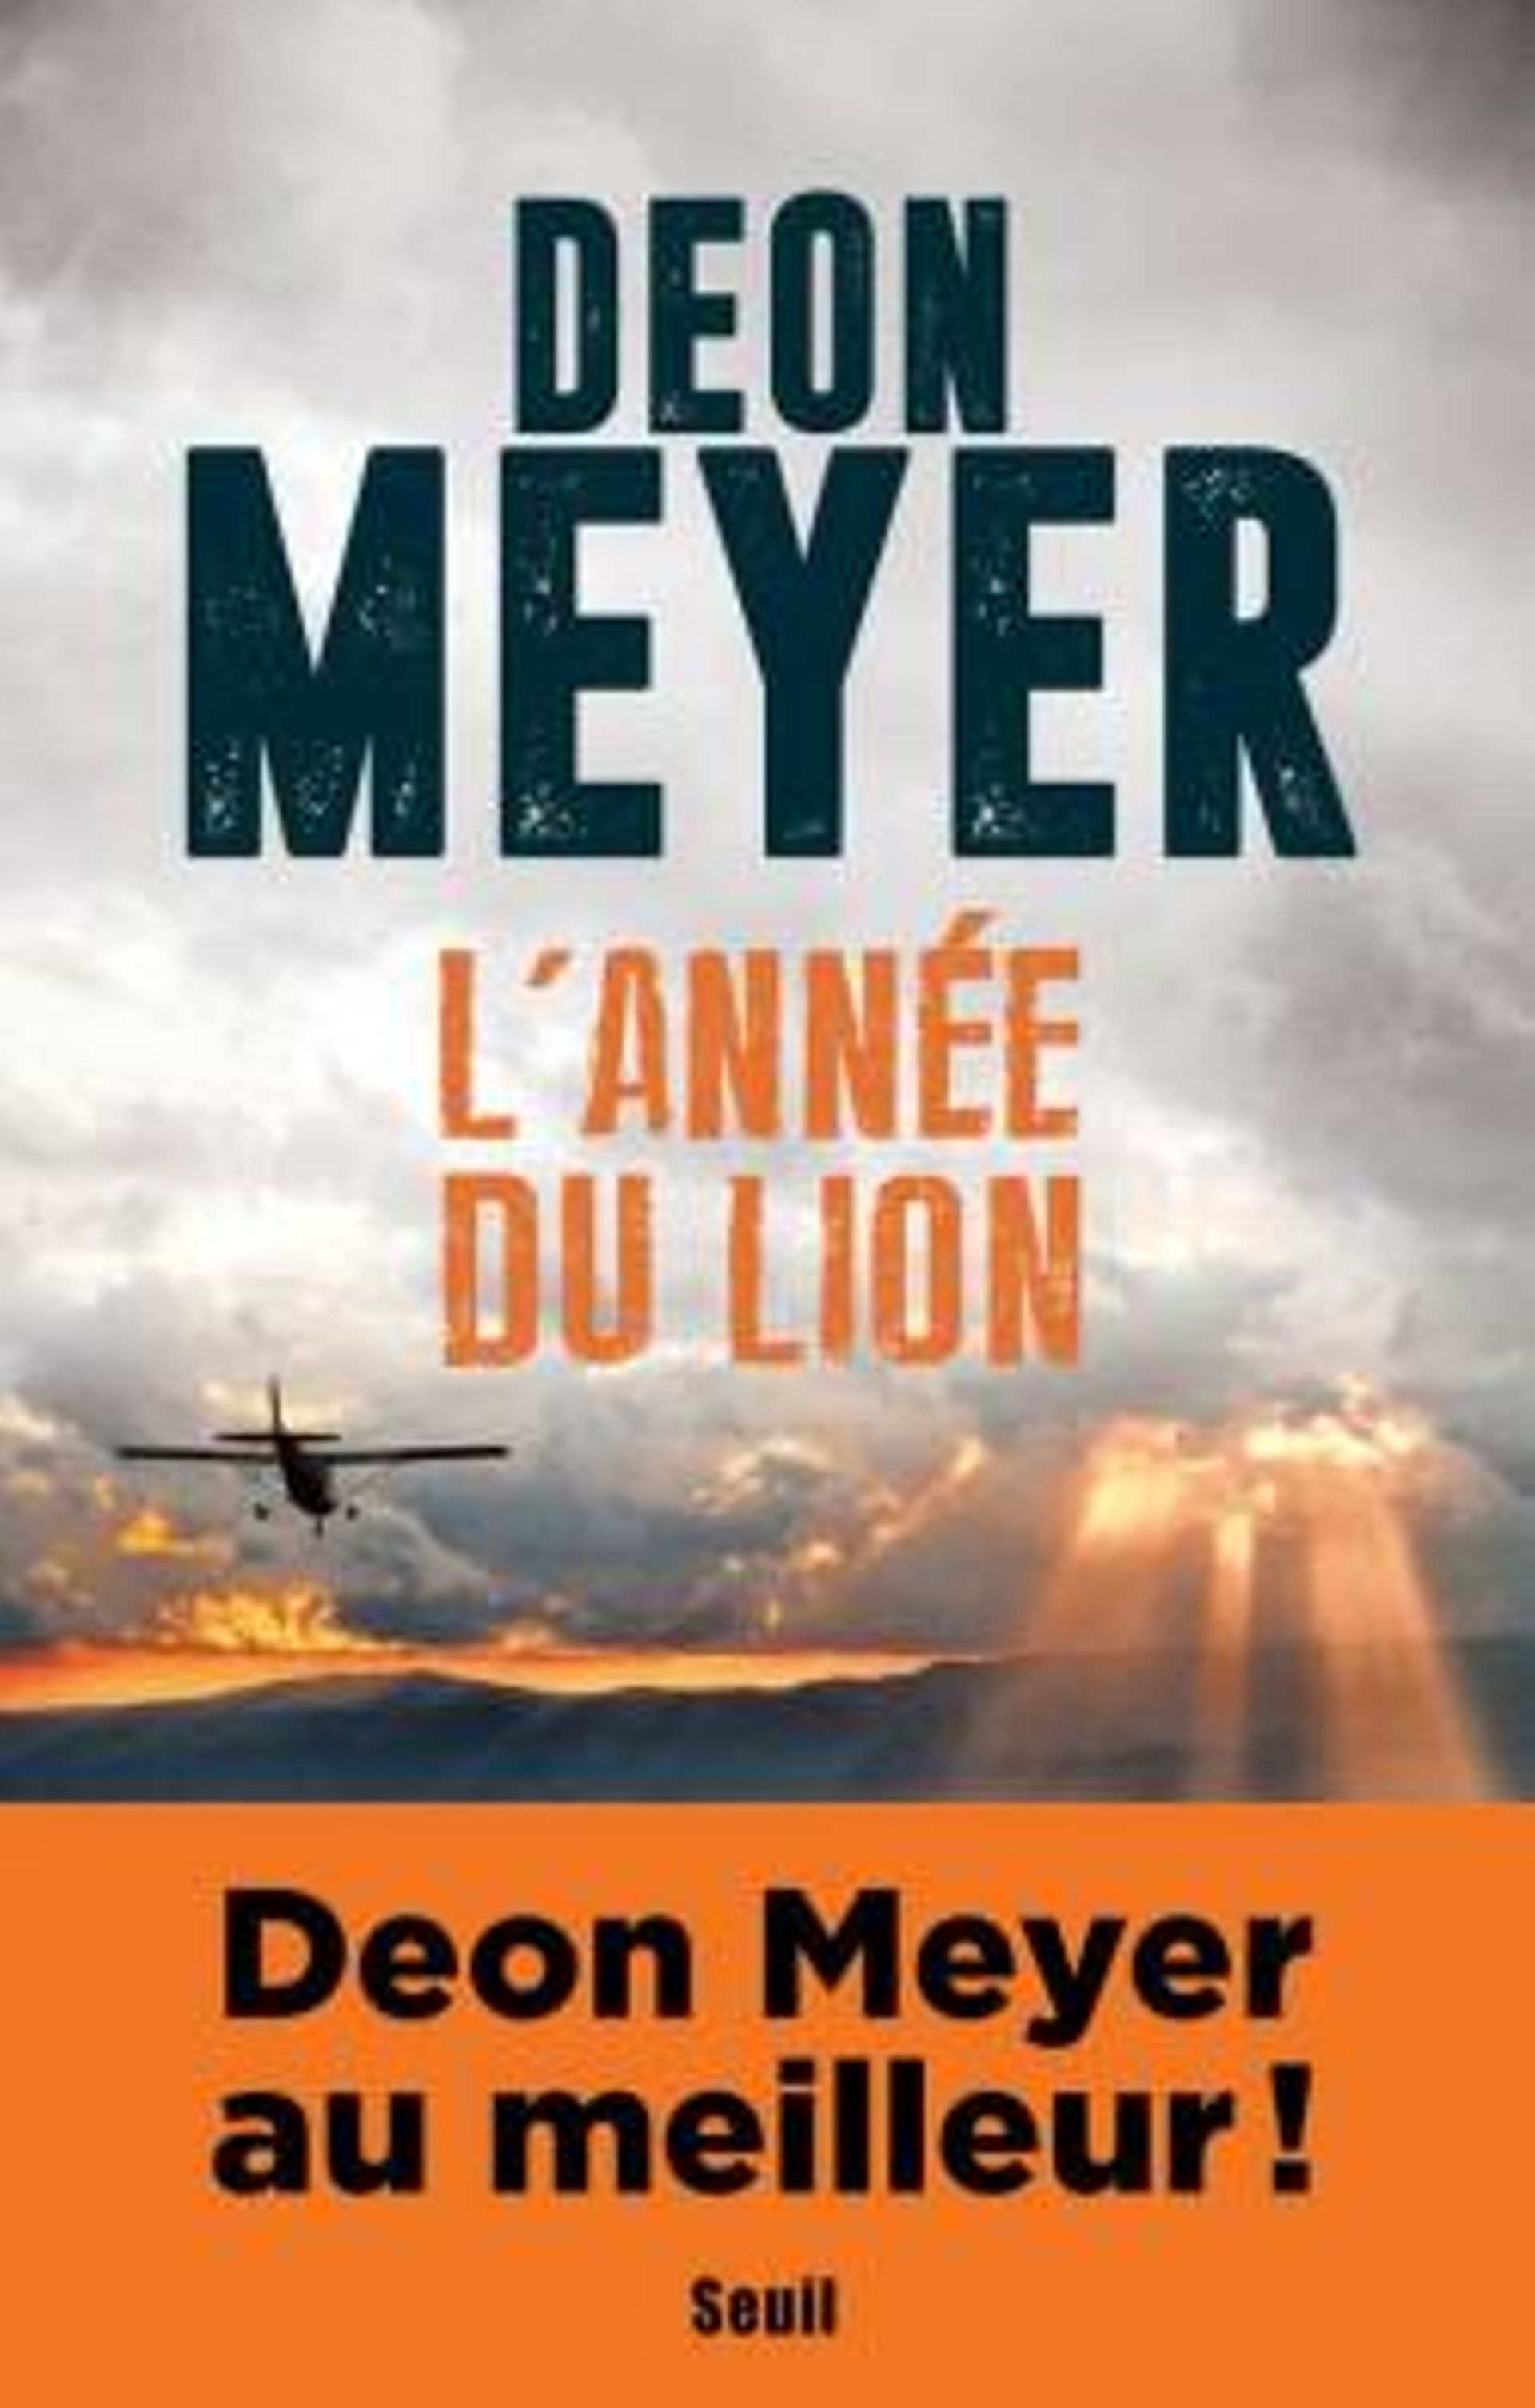 L'écrivain Deon Meyer décrivait un monde ravagé par un coronavirus dans son livre L'Année du Lion